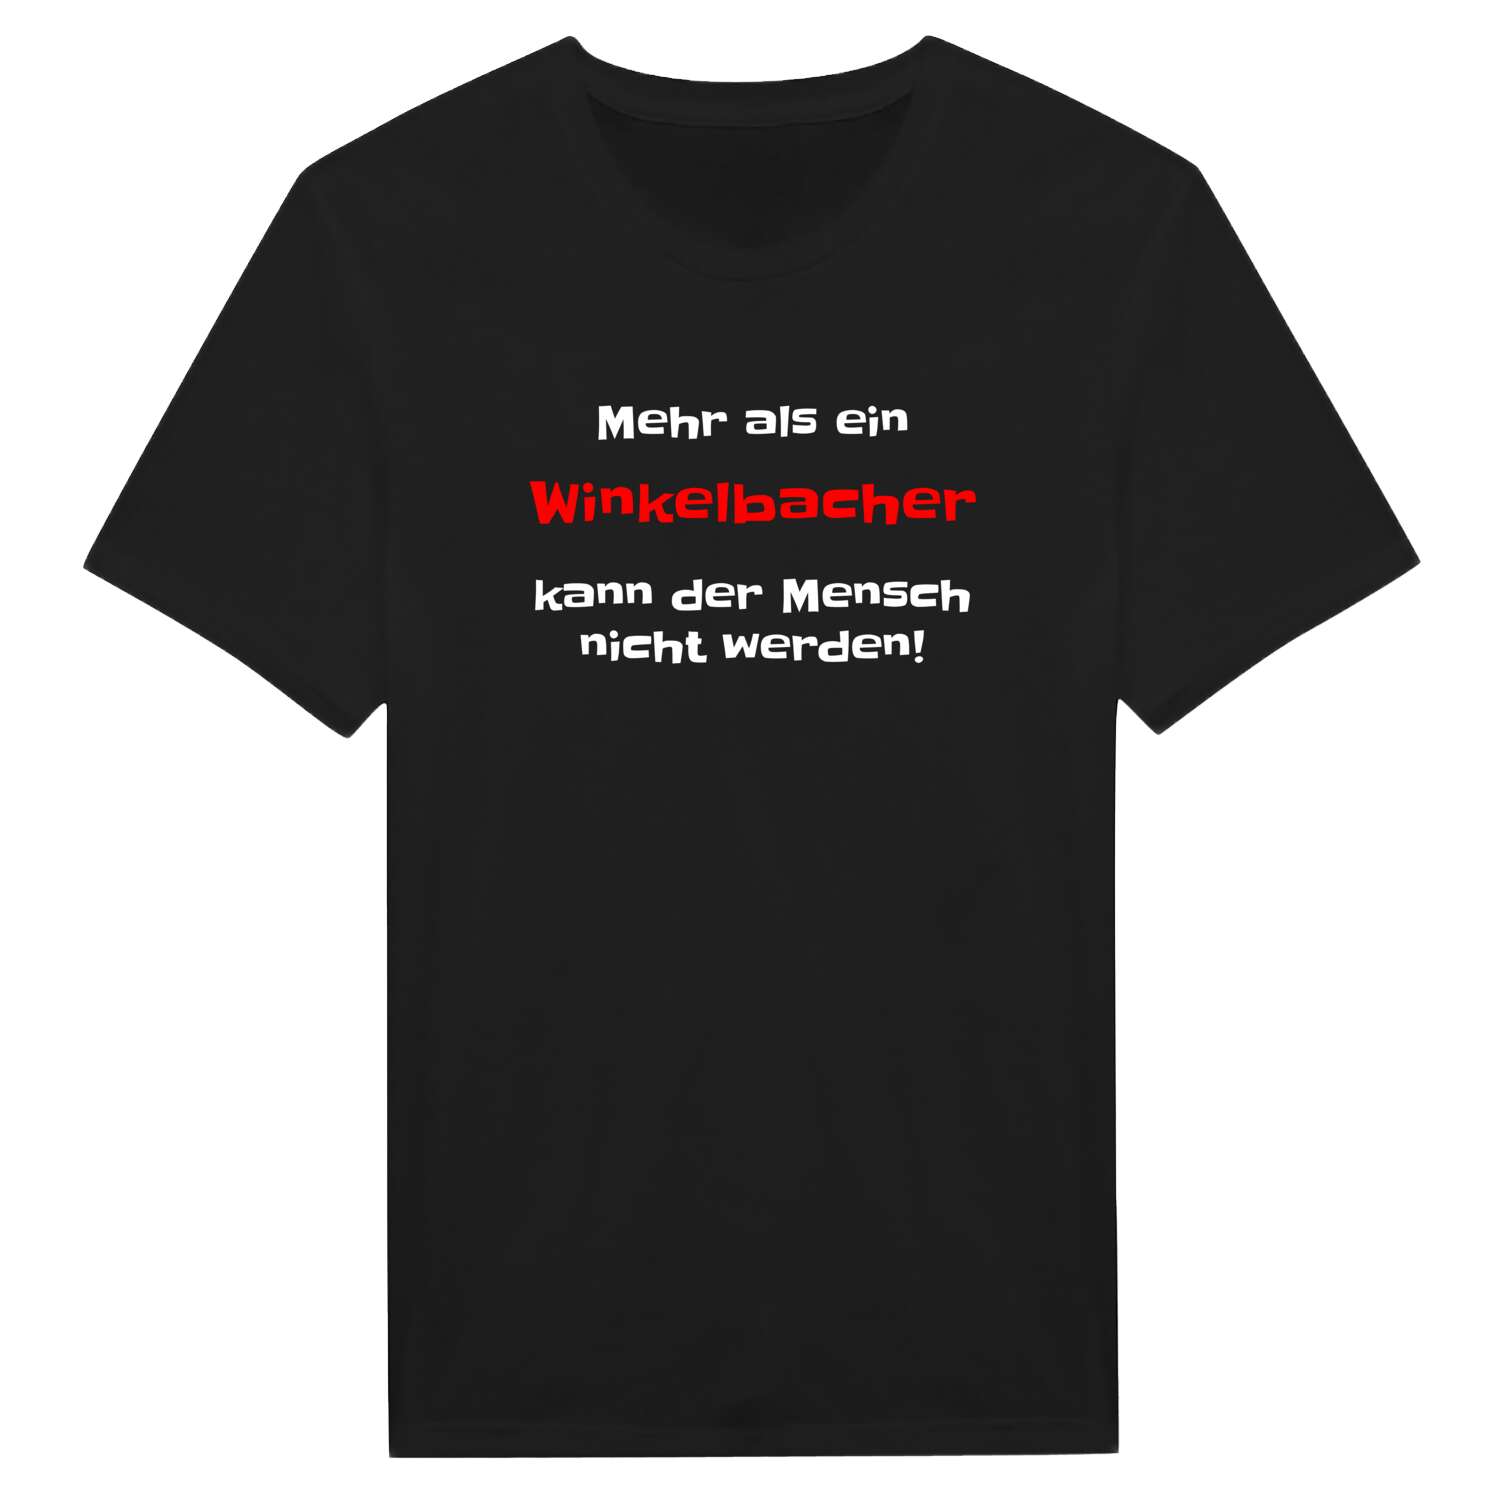 Winkelbach T-Shirt »Mehr als ein«